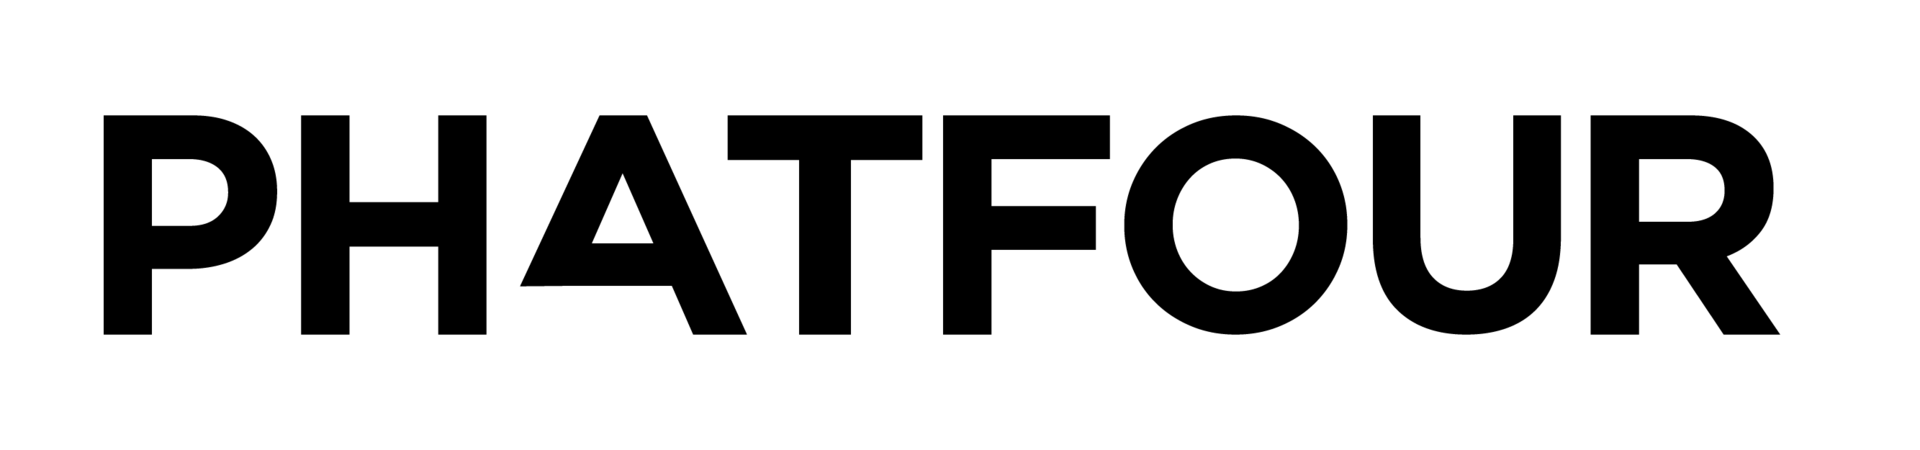 1.-phatfour-logo-long